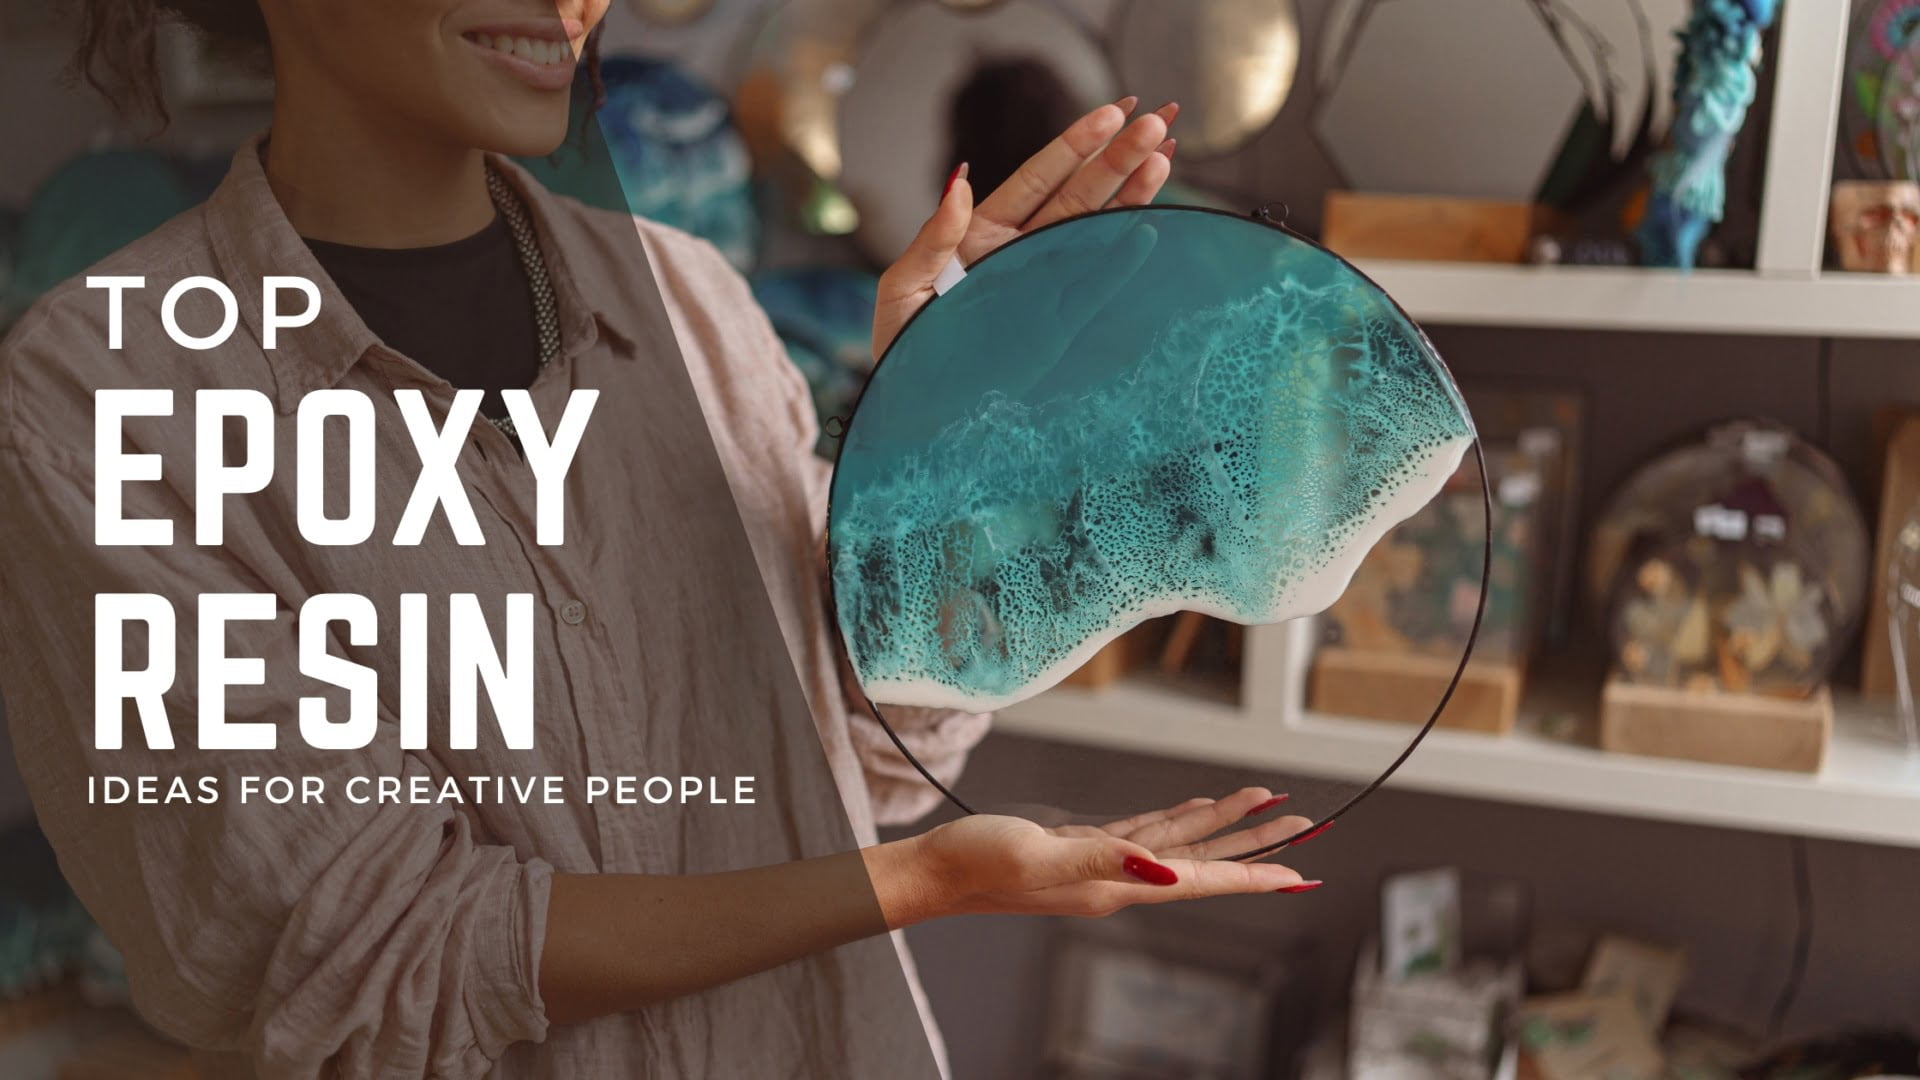 Discover the World of Resin Art - Epoxy Starter Kit For Beginners